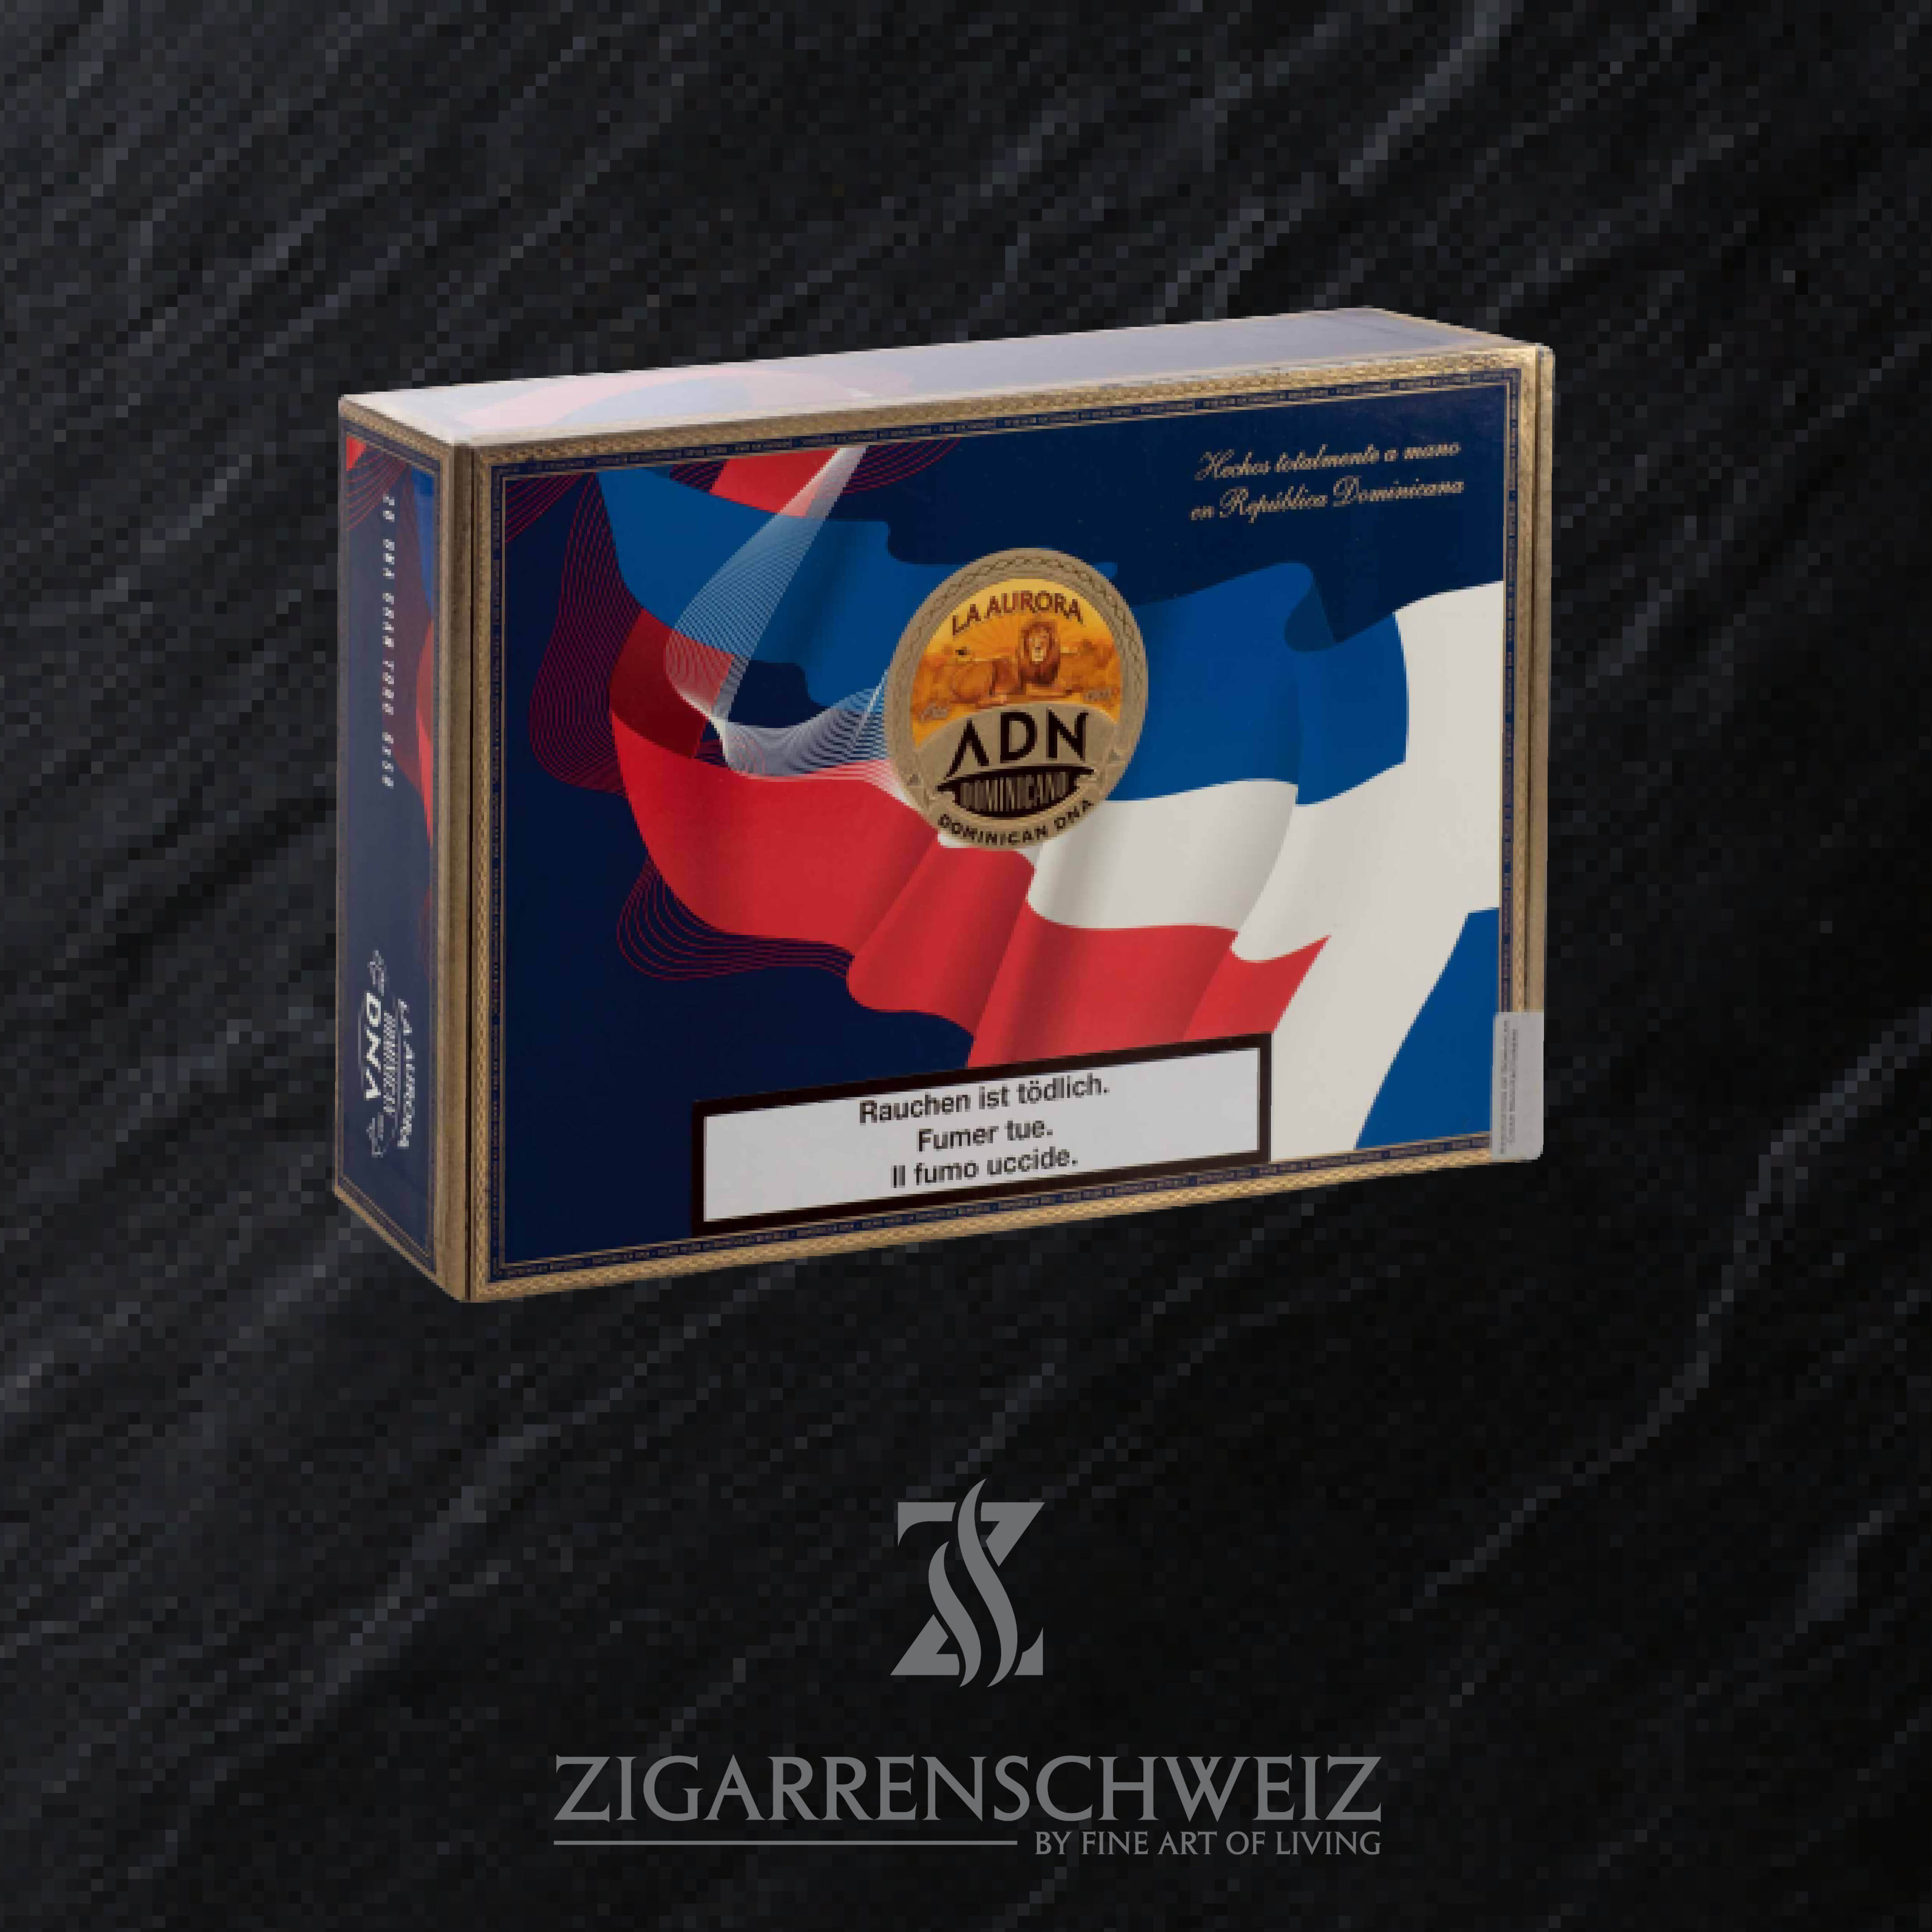 La Aurora DNA Gran Toro Zigarren Kiste geschlossen